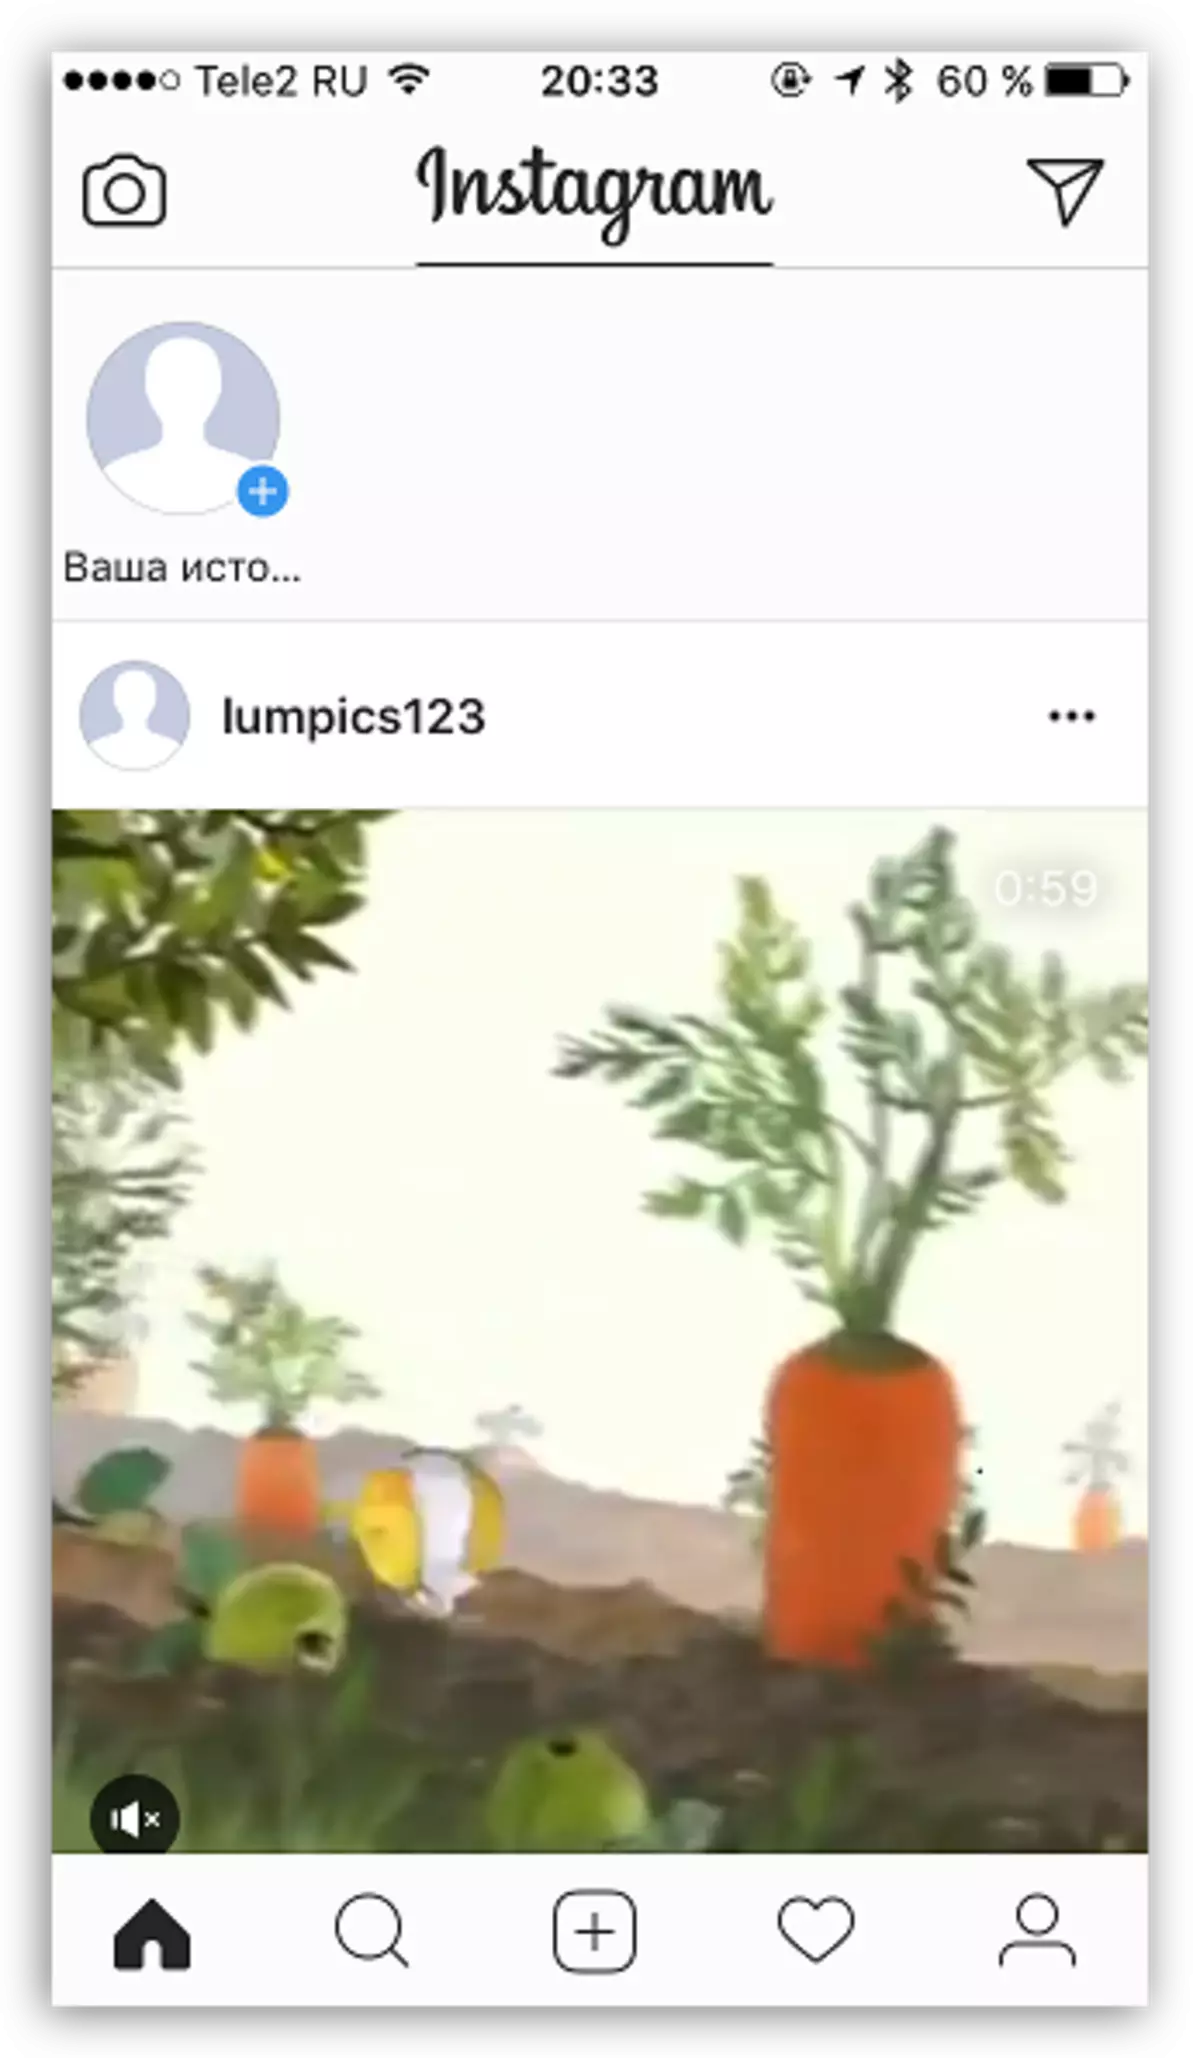 ಕಂಪ್ಯೂಟರ್ನಿಂದ Instagram ನಲ್ಲಿ ಪ್ರಕಟವಾದ ವೀಡಿಯೊ